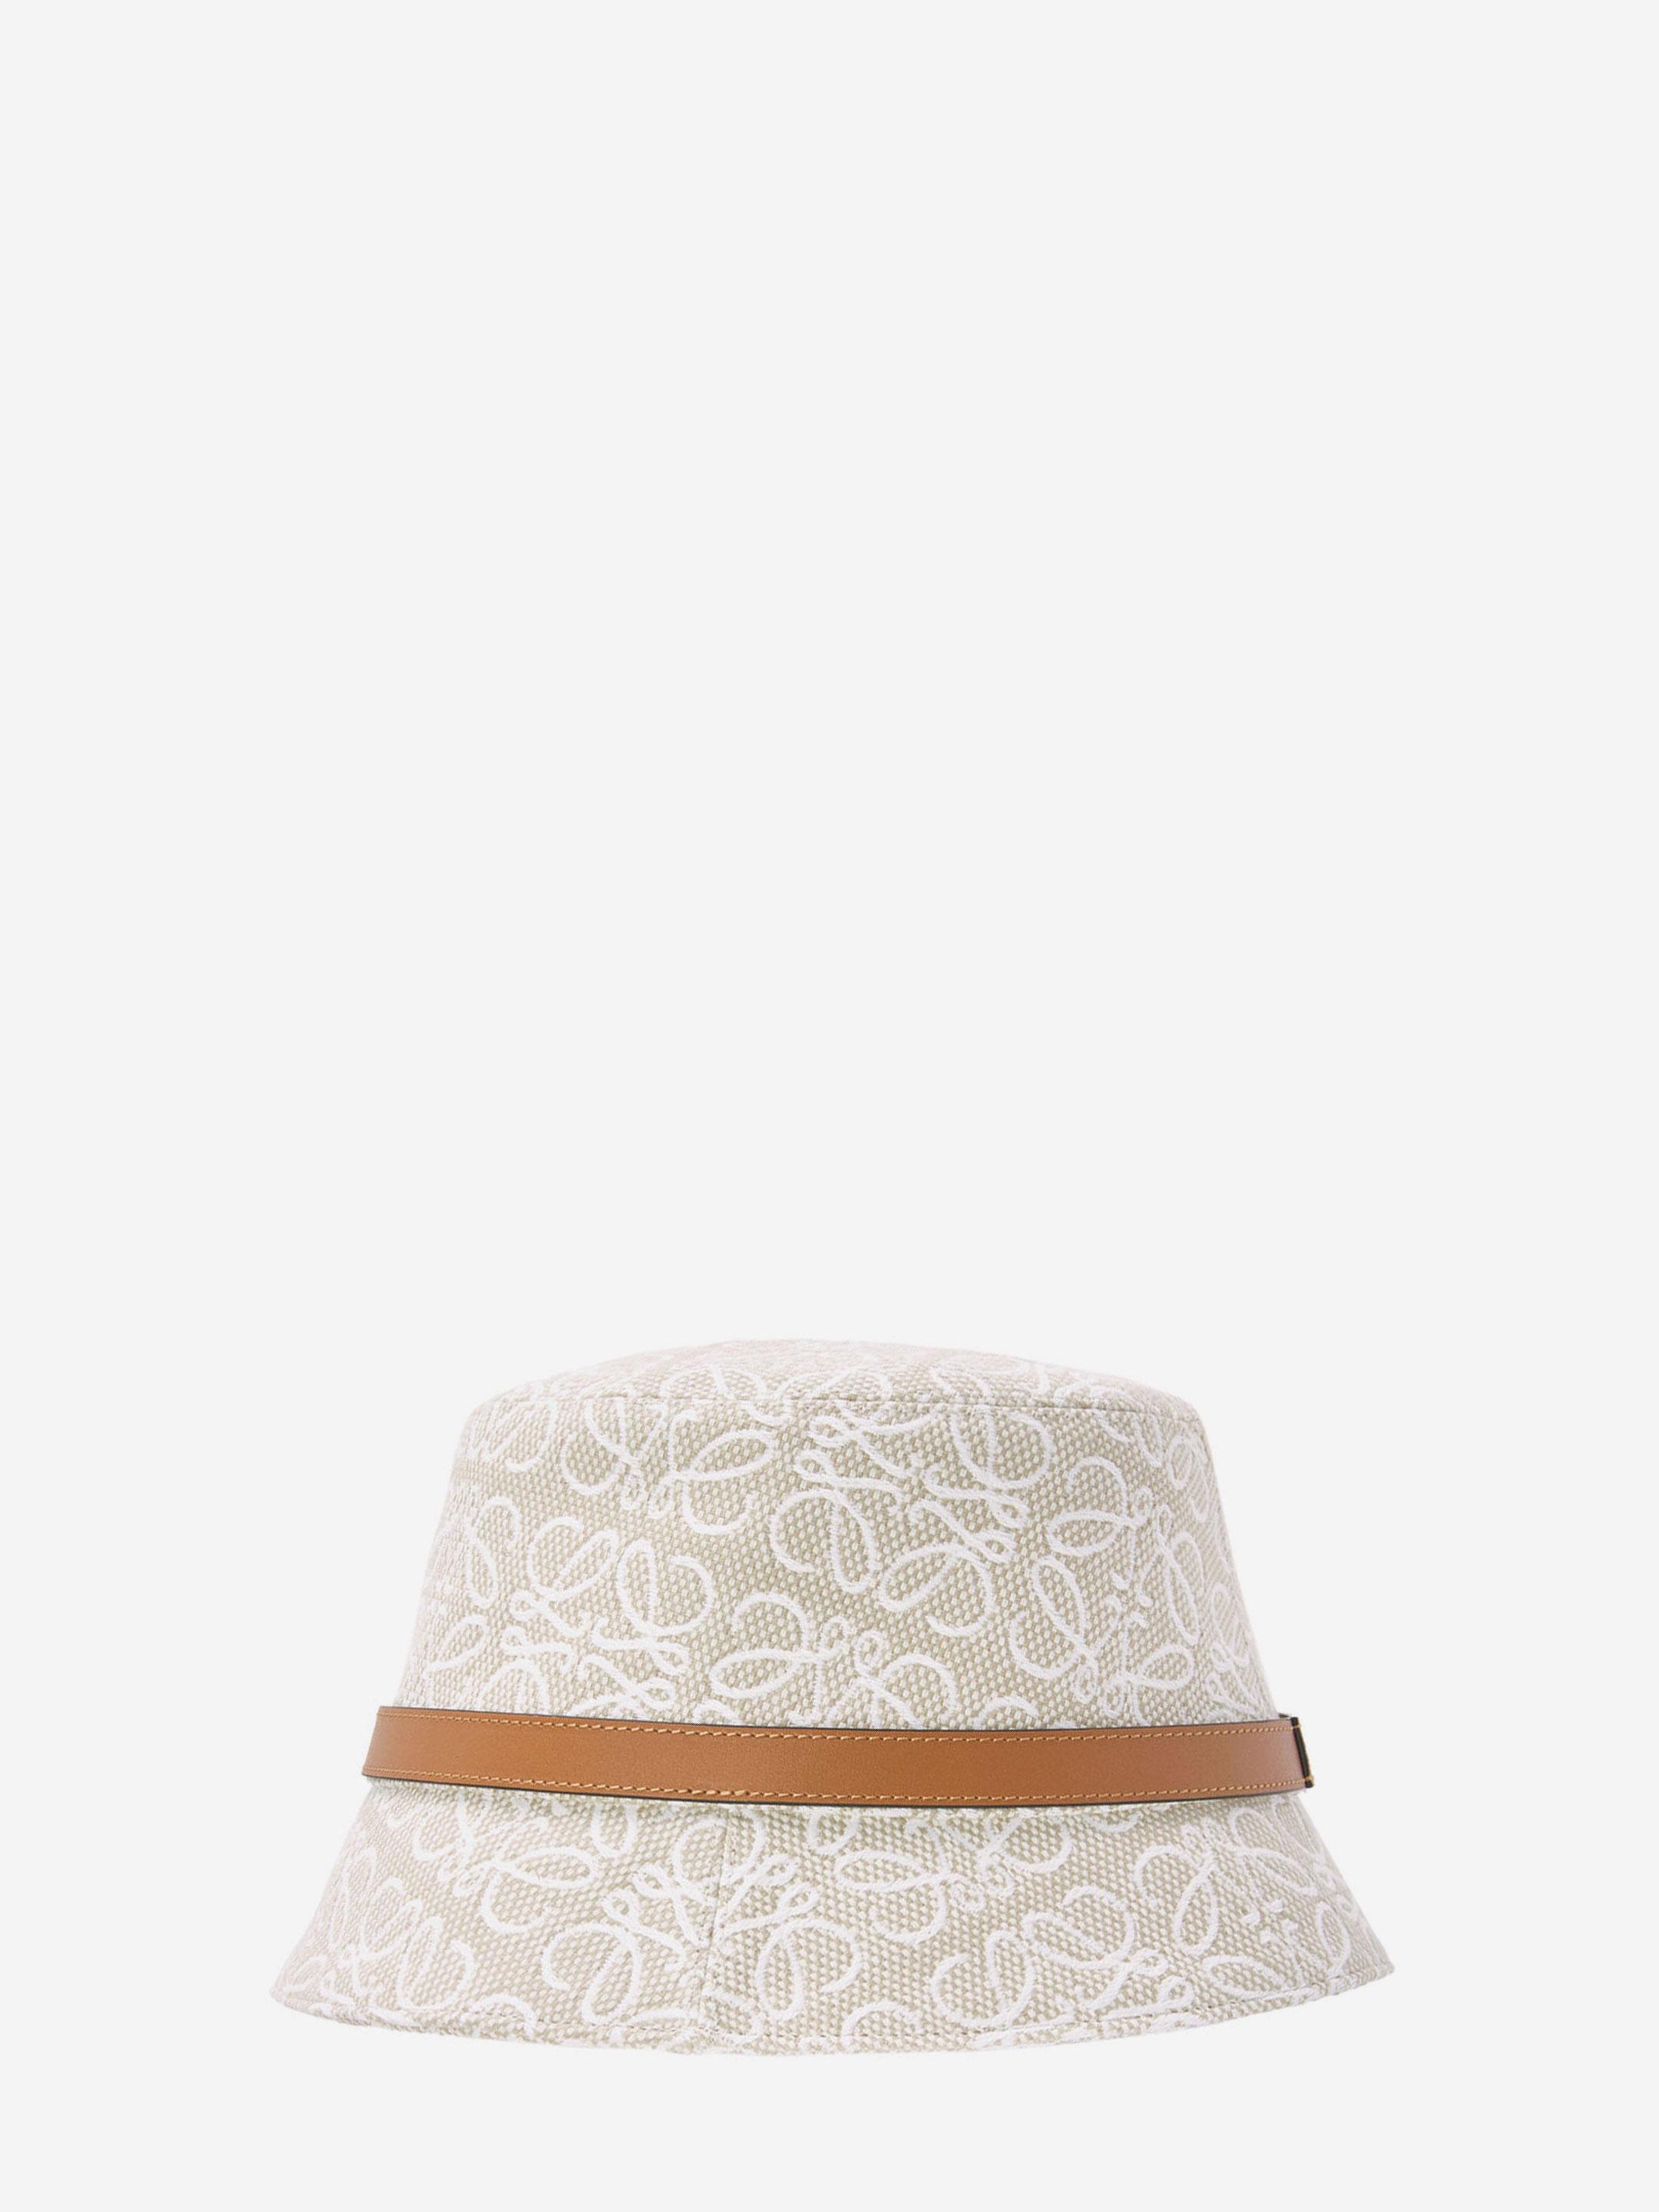 Anagram Bucket Hat in Multicoloured - Loewe